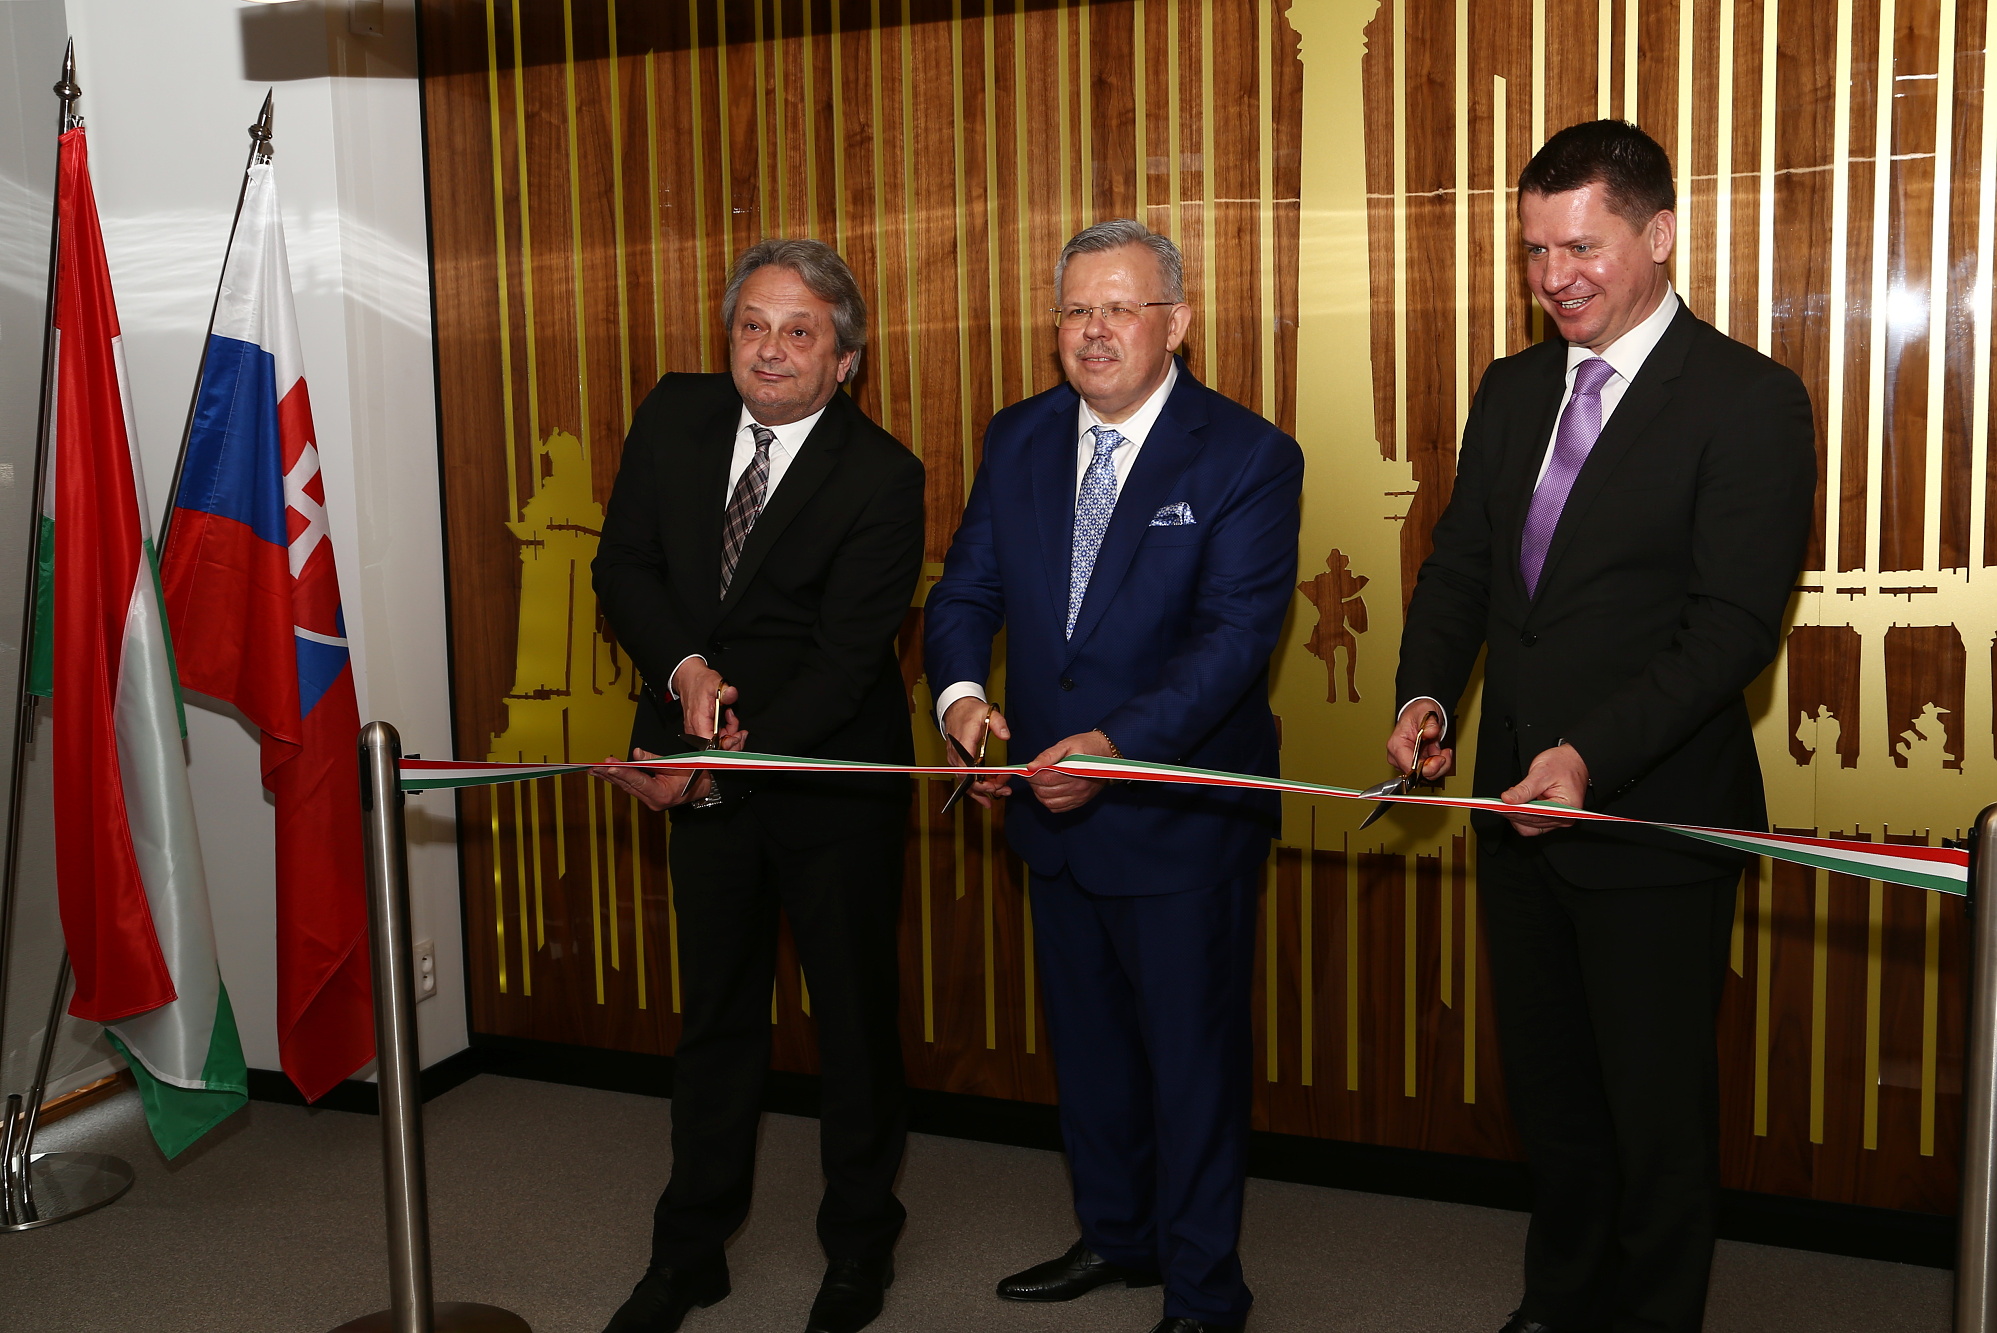 Otvorenie honorárneho konzulátu Maďarska v Nitre - prestrihnutie pásky